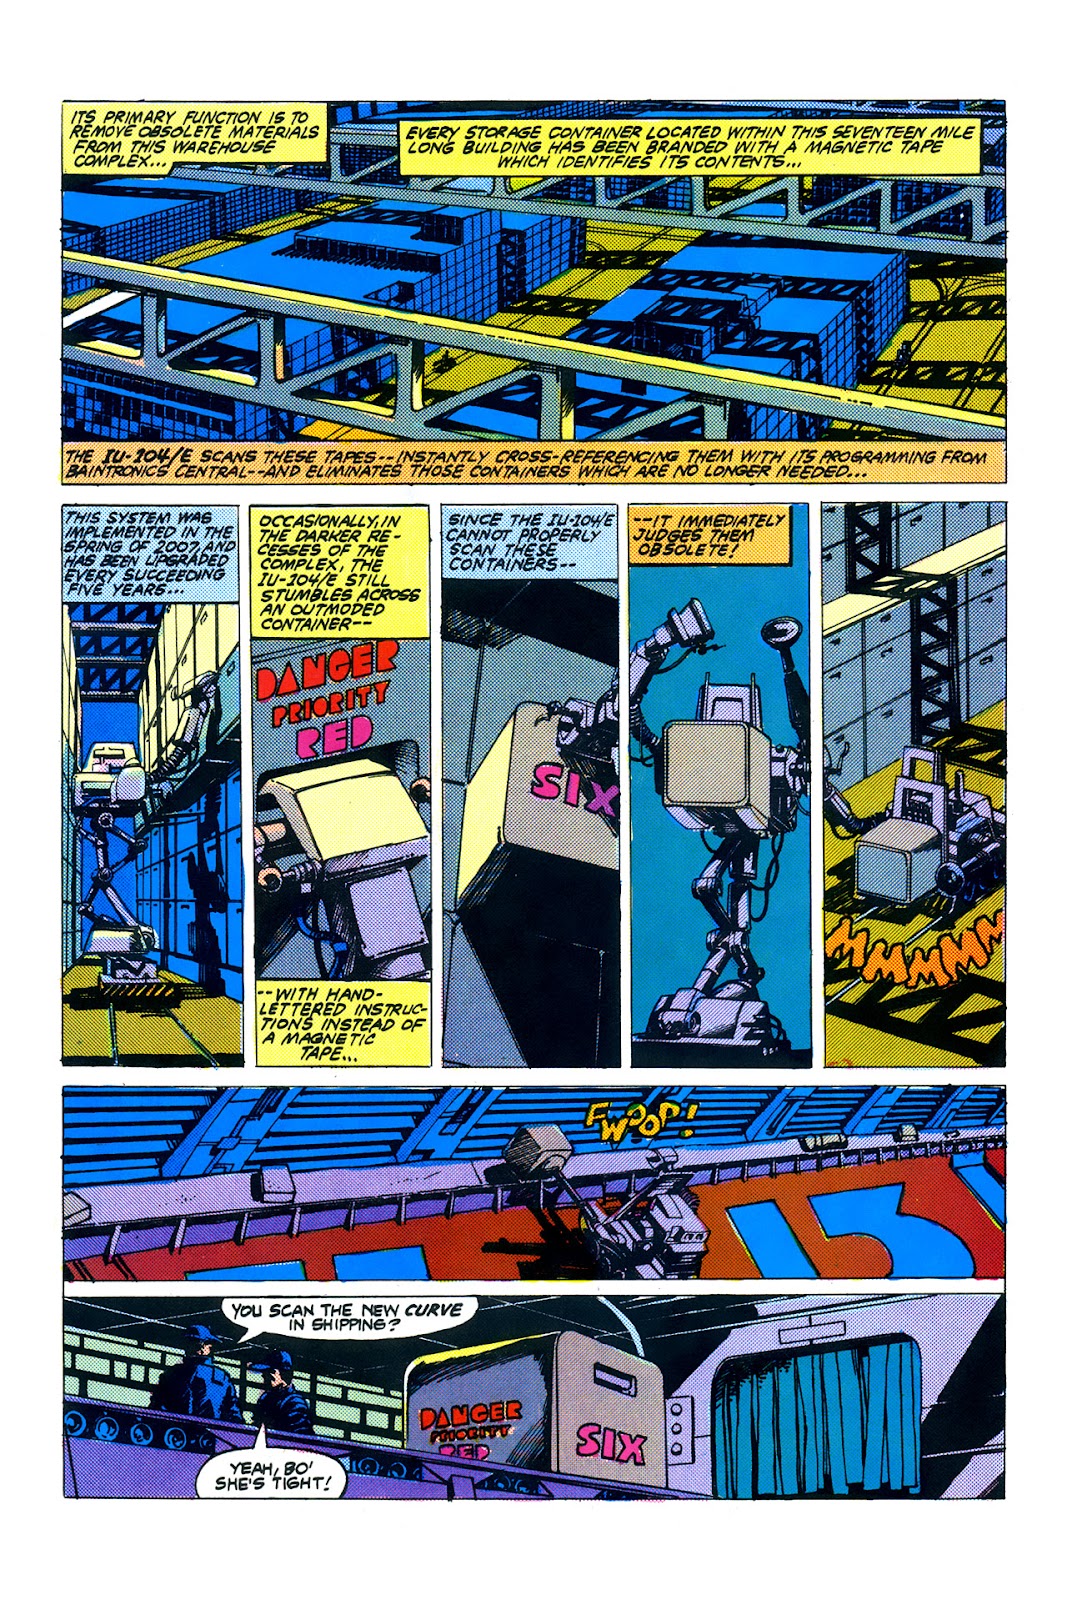 Machine Man 2020 issue 1 - Page 5